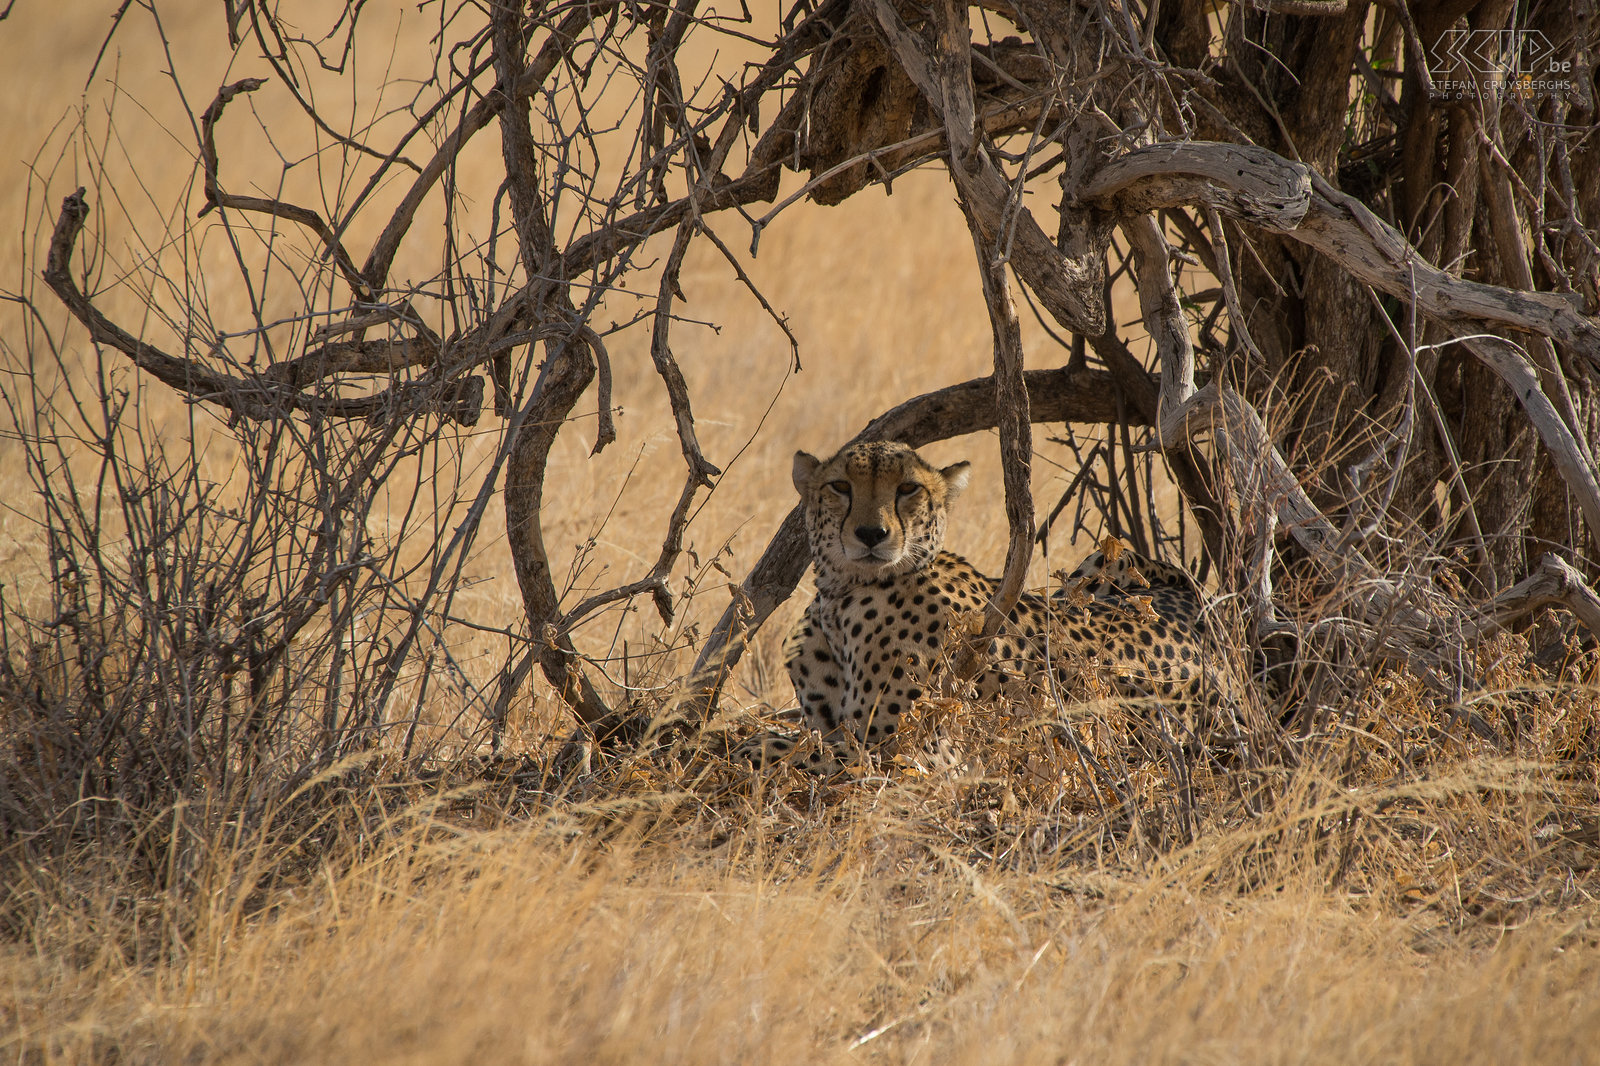 Samburu - Cheeta In de late namiddag vonden we een cheeta/jachtluipaard (Cheetah, Acinonyx jubatus) liggend onder een boom op de savanne vlakte. We hadden veel geluk tijdens onze game drives. In 3 dagen vonden we 3 cheeta's en een aantal keren kwamen ze heel dicht bij onze jeep. Deze cheeta rustte uit in de schaduw en was aan het wachten om op jacht te gaan. Cheeta’s jagen gedurende de dag en ze vallen aan met snelheid, in plaats van naar hun prooi te sluipen zoals leeuwen doen. De cheeta is het snelste landdier, het kan snelheden van 110 tot 120km/u halen in sprintjes van maximaal 500m. Stefan Cruysberghs